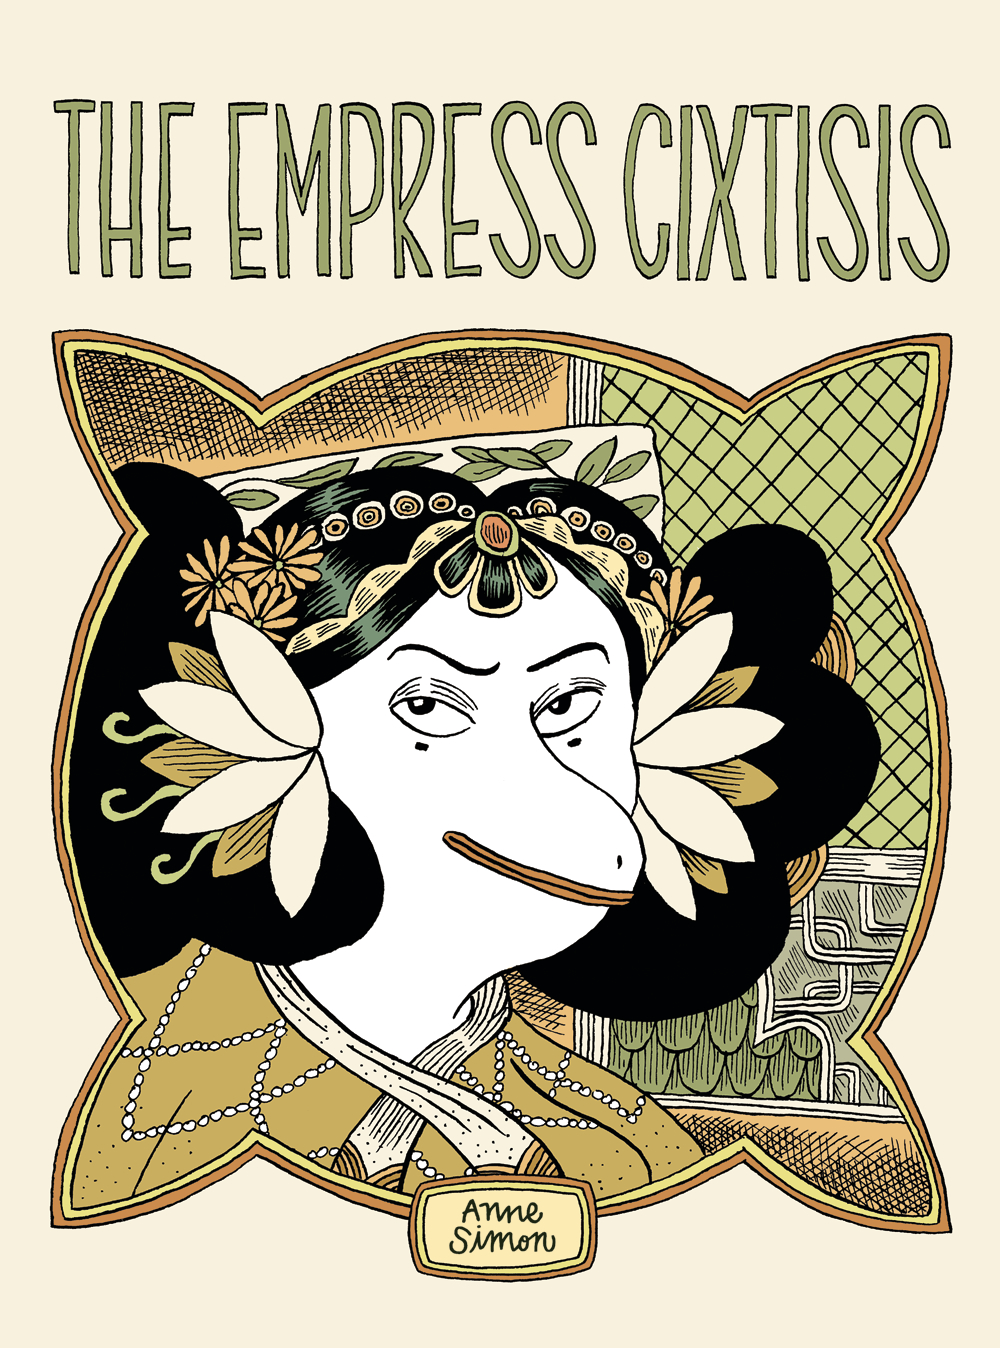 Empress Cixtisis Hardcover (Mature)